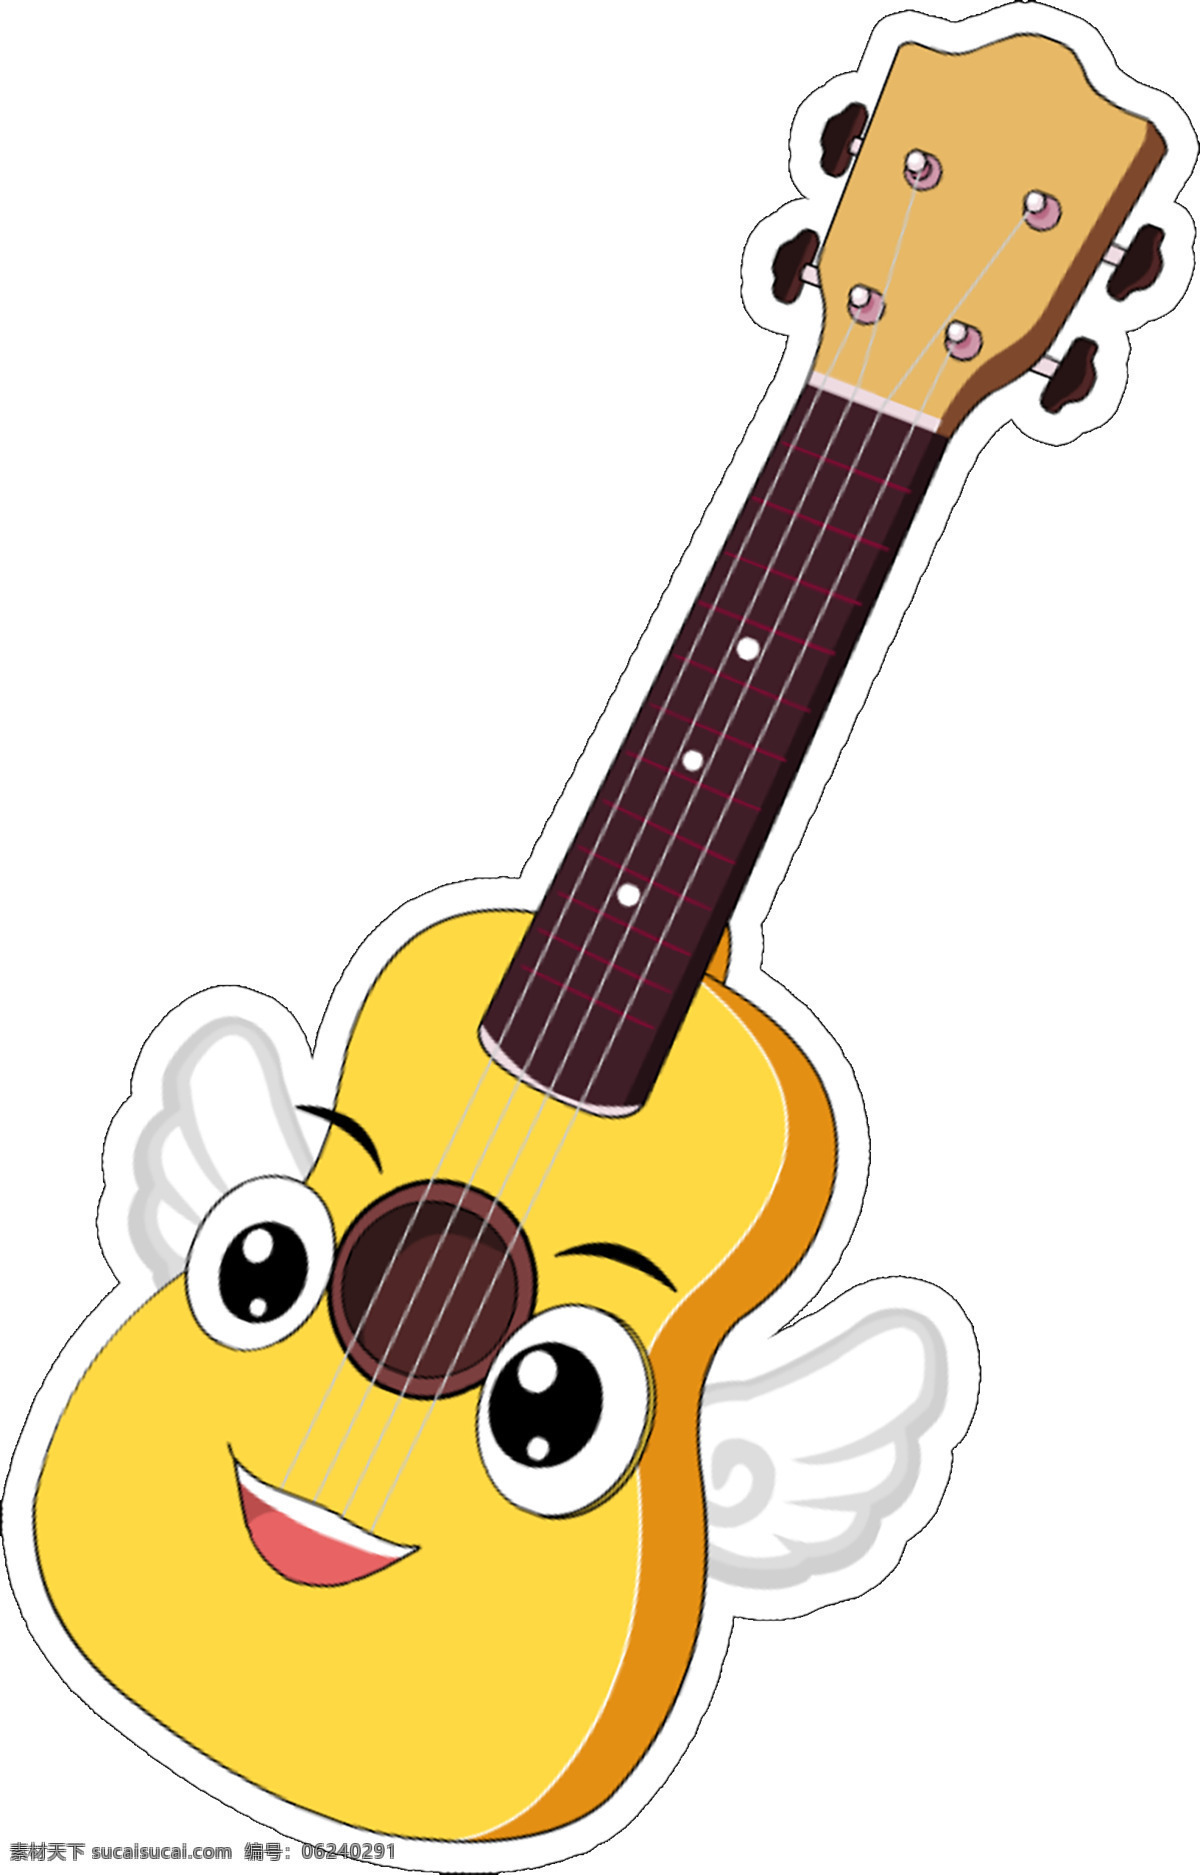 吉他 尤克里里 天使 卡通图 卡通吉他 卡通乐器 天使吉他 卡通天使 吉他翅膀 矢量吉他